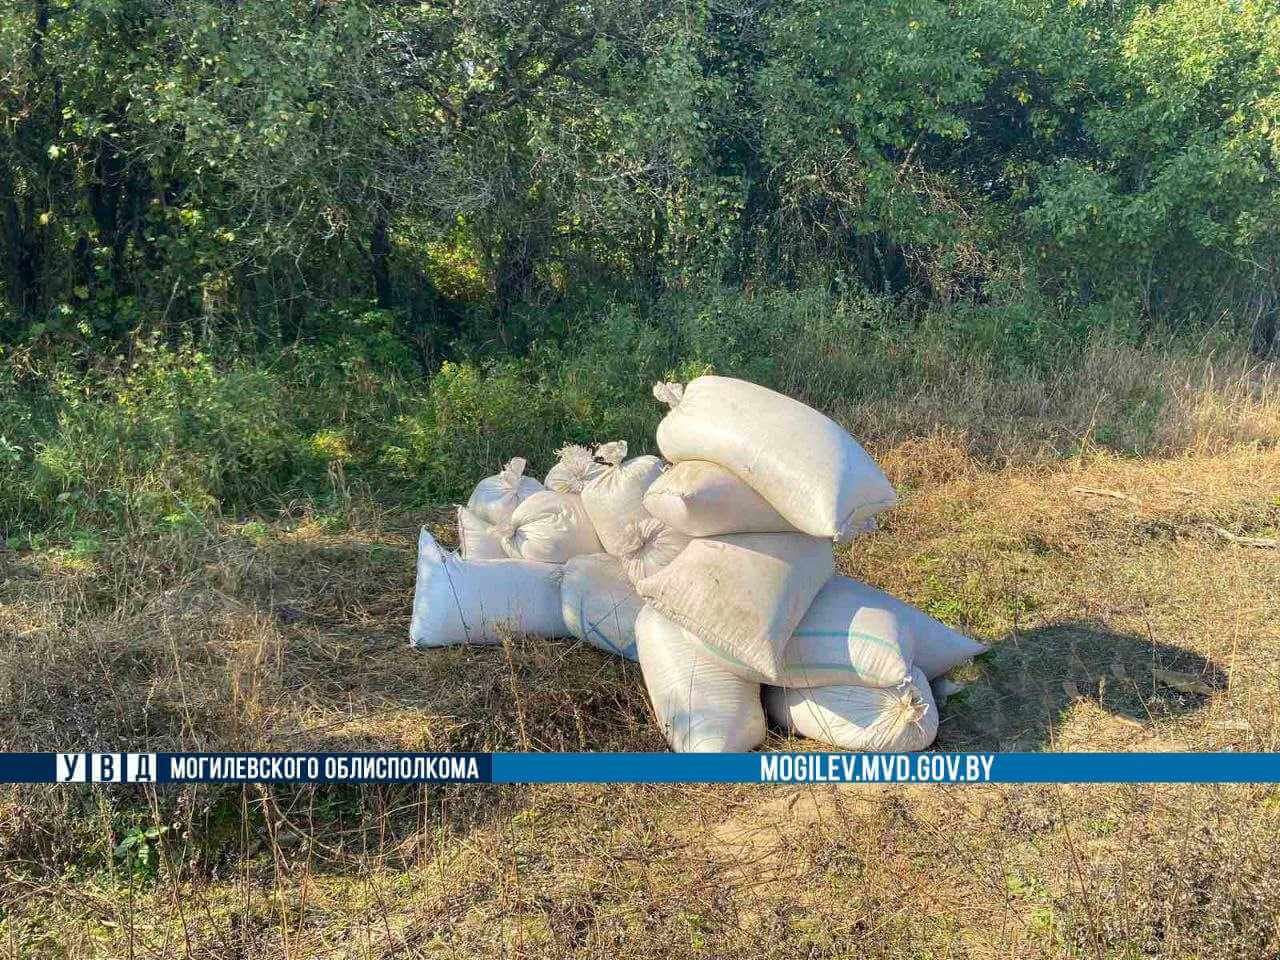 Около 400 кг. похищенной пшеницы изъято правоохранителями в Осиповичах